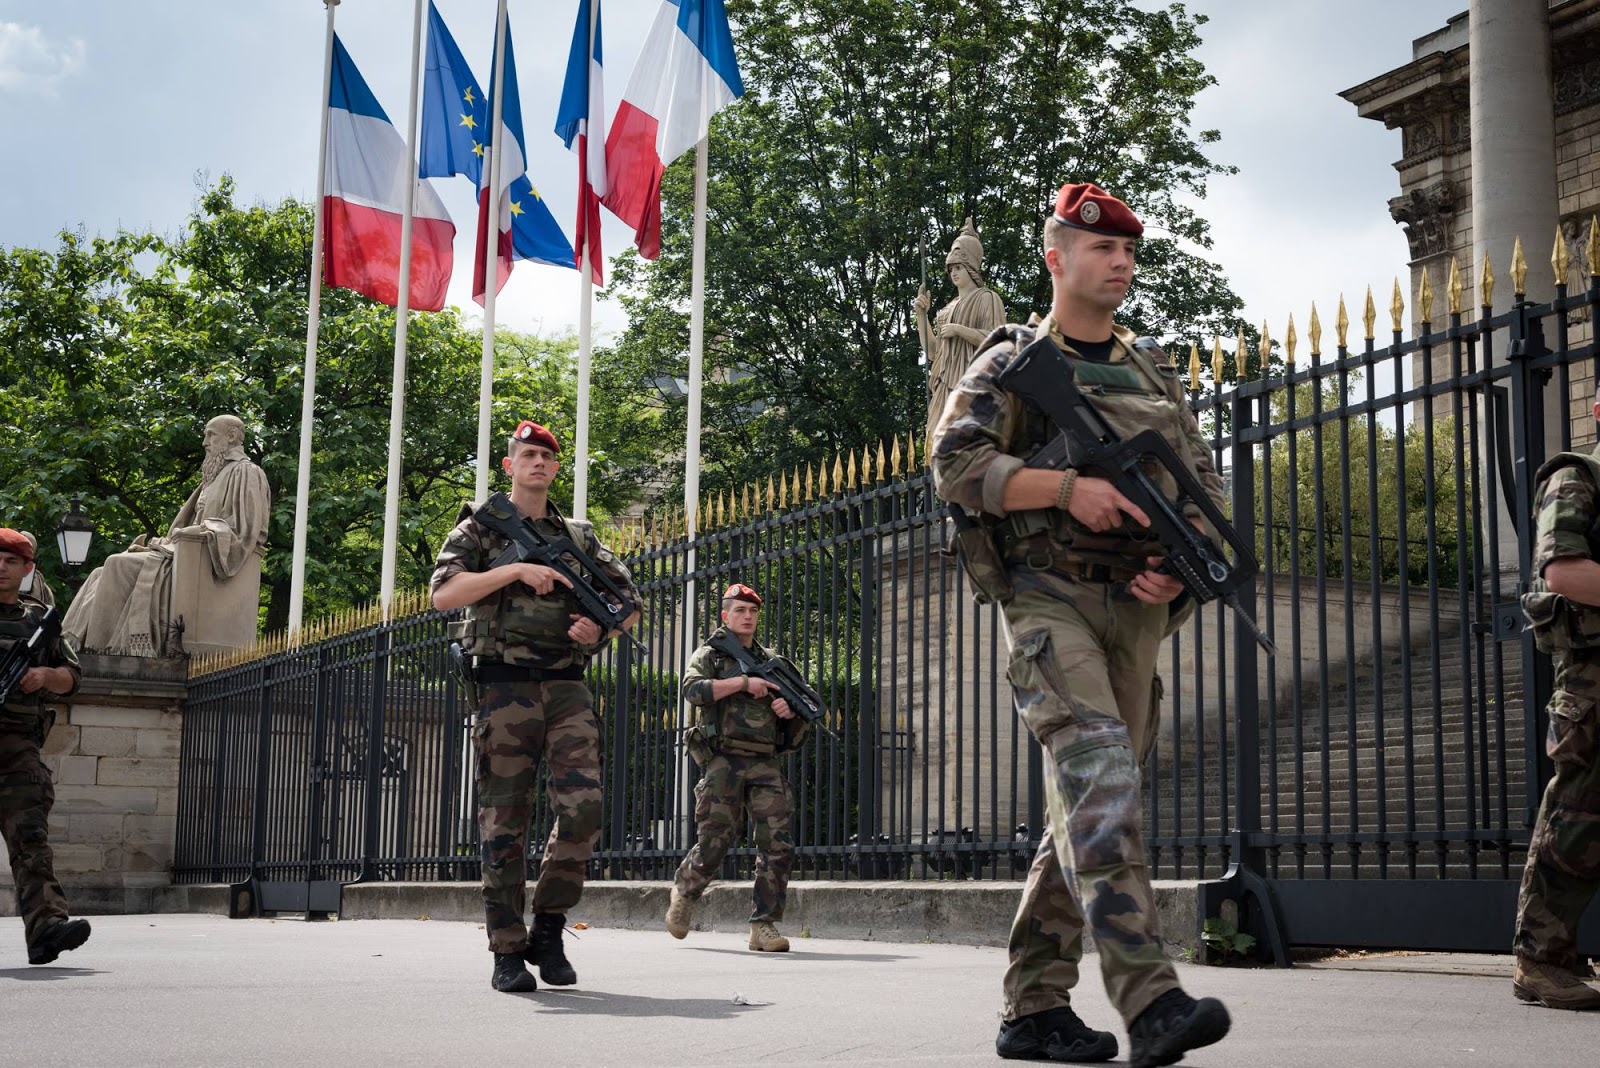 Lire la suite à propos de l’article Actu nationale: Sécurité nationale : le courage s’impose #France